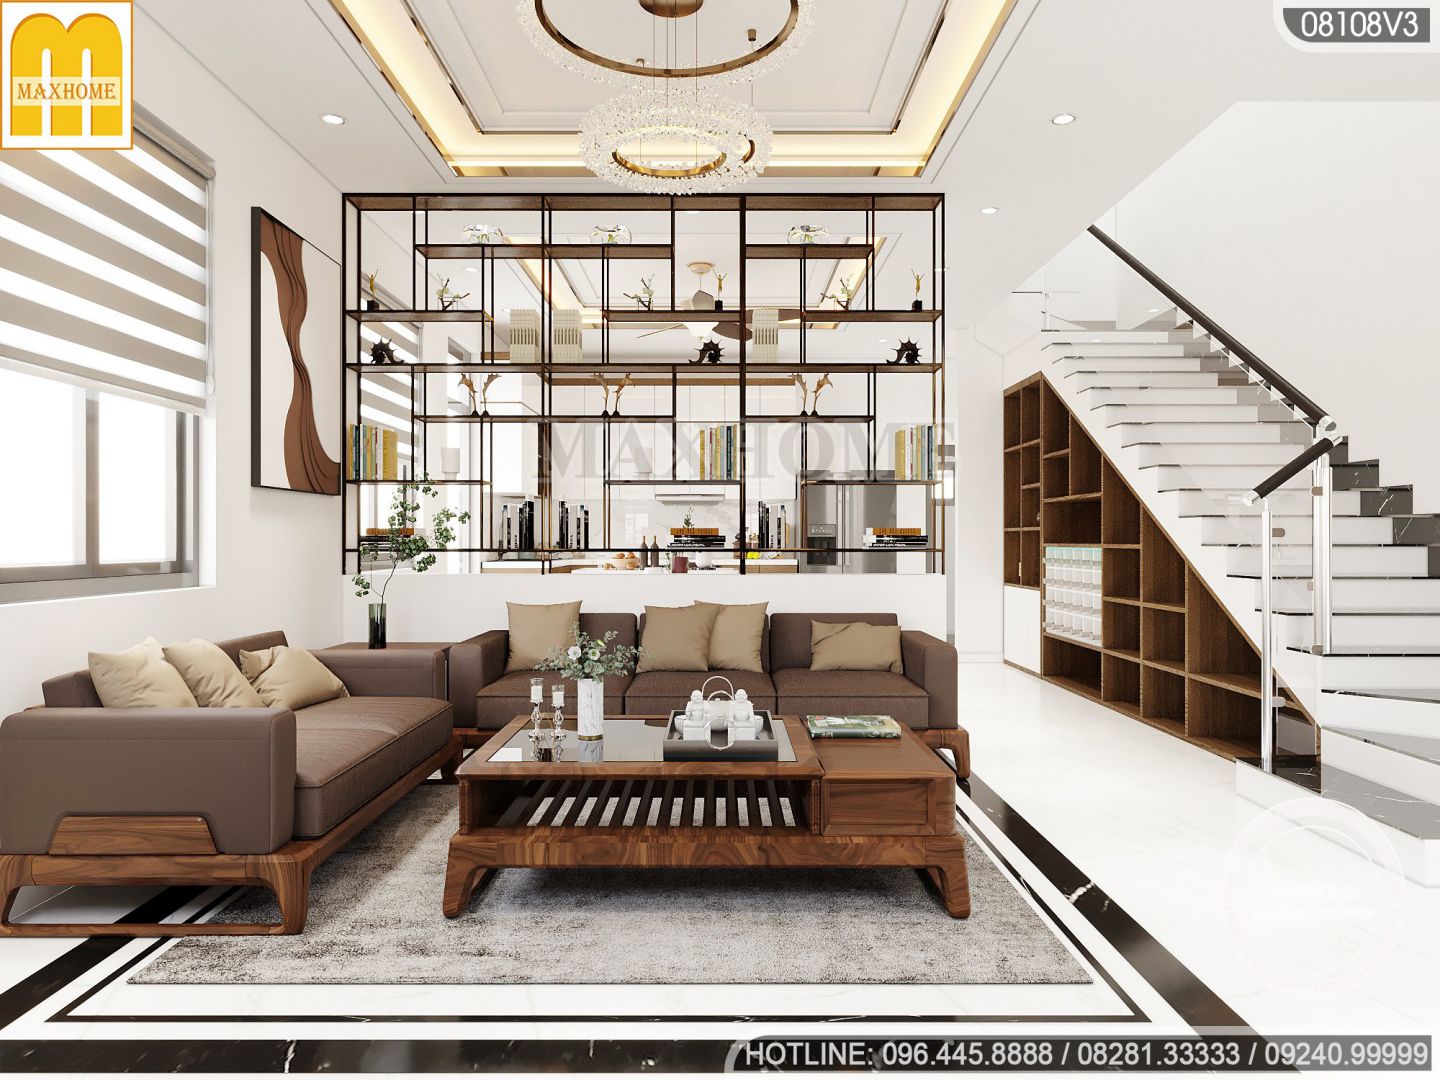 Mẫu nội thất đơn giản cho nhà hiện đại 3 tầng 1 tum với mức giá siêu rẻ